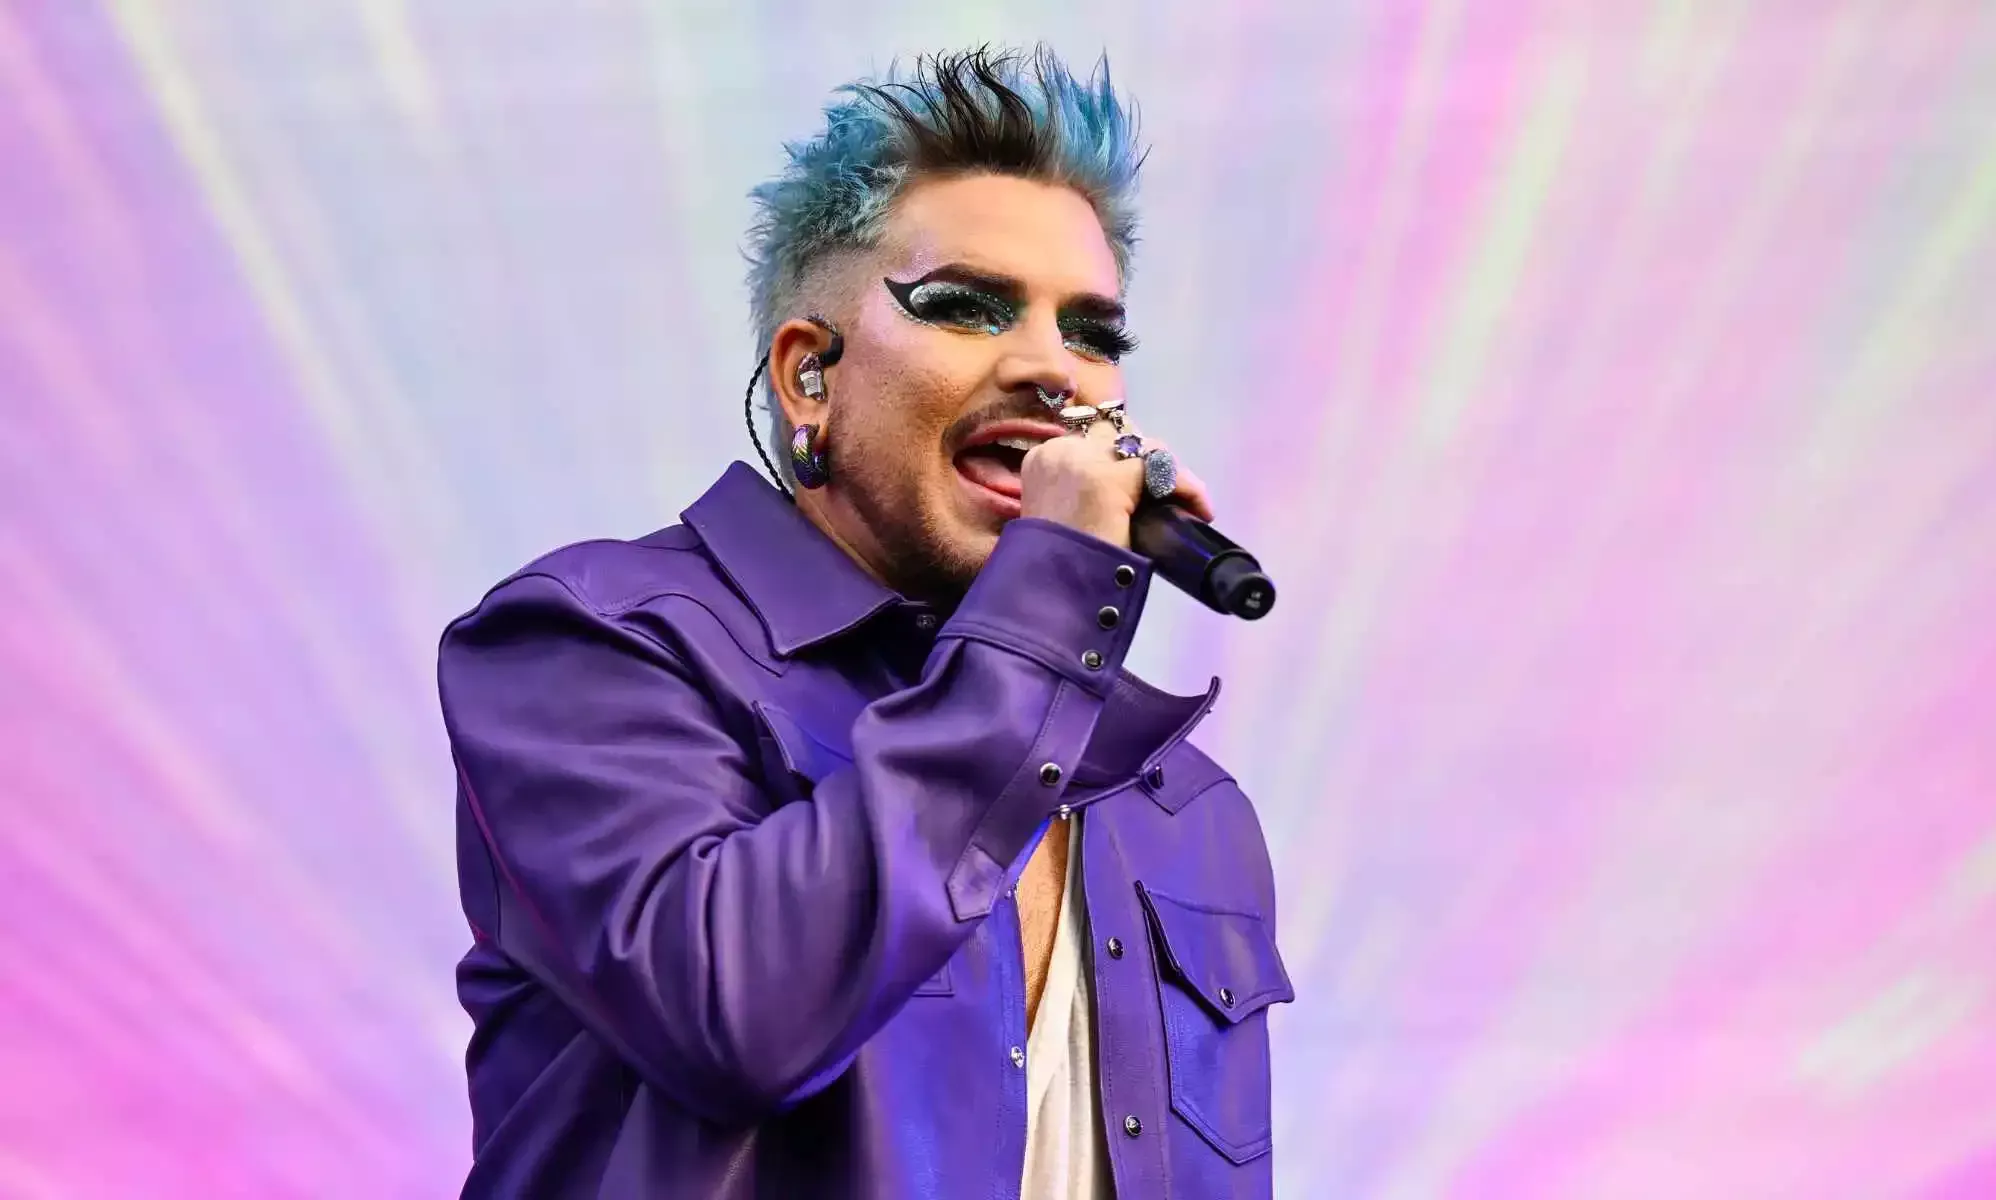 El fascinante documental de Adam Lambert rinde homenaje a los artistas LGBTQ+ que marcaron la historia de la música